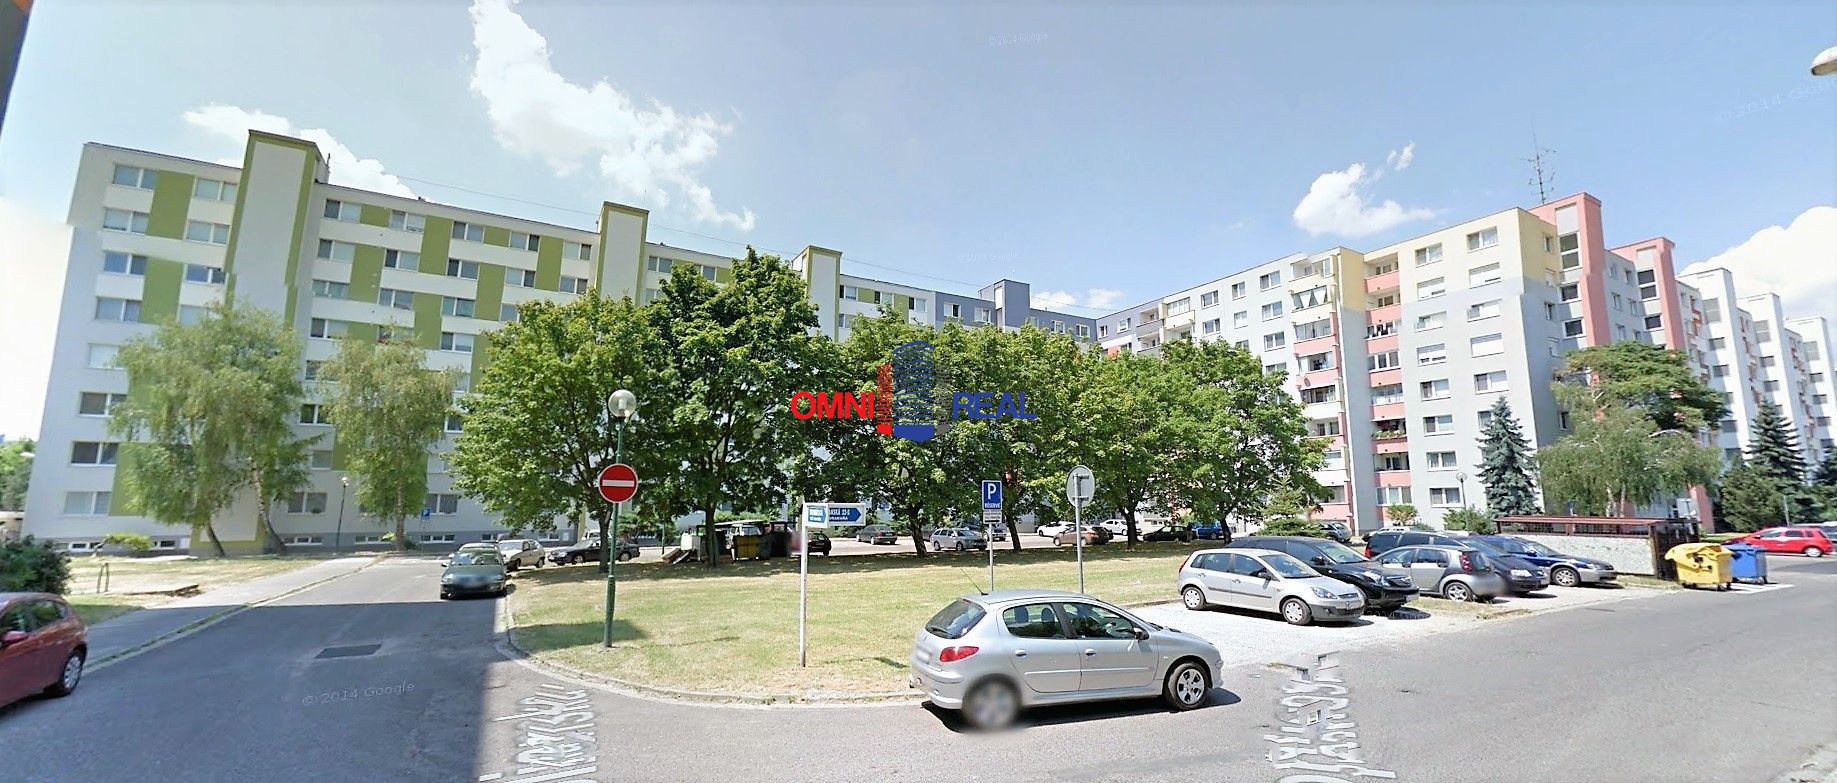 Hľadám 2. izbový byt na kúpu v lokalite Bratislava – Vrakuňa